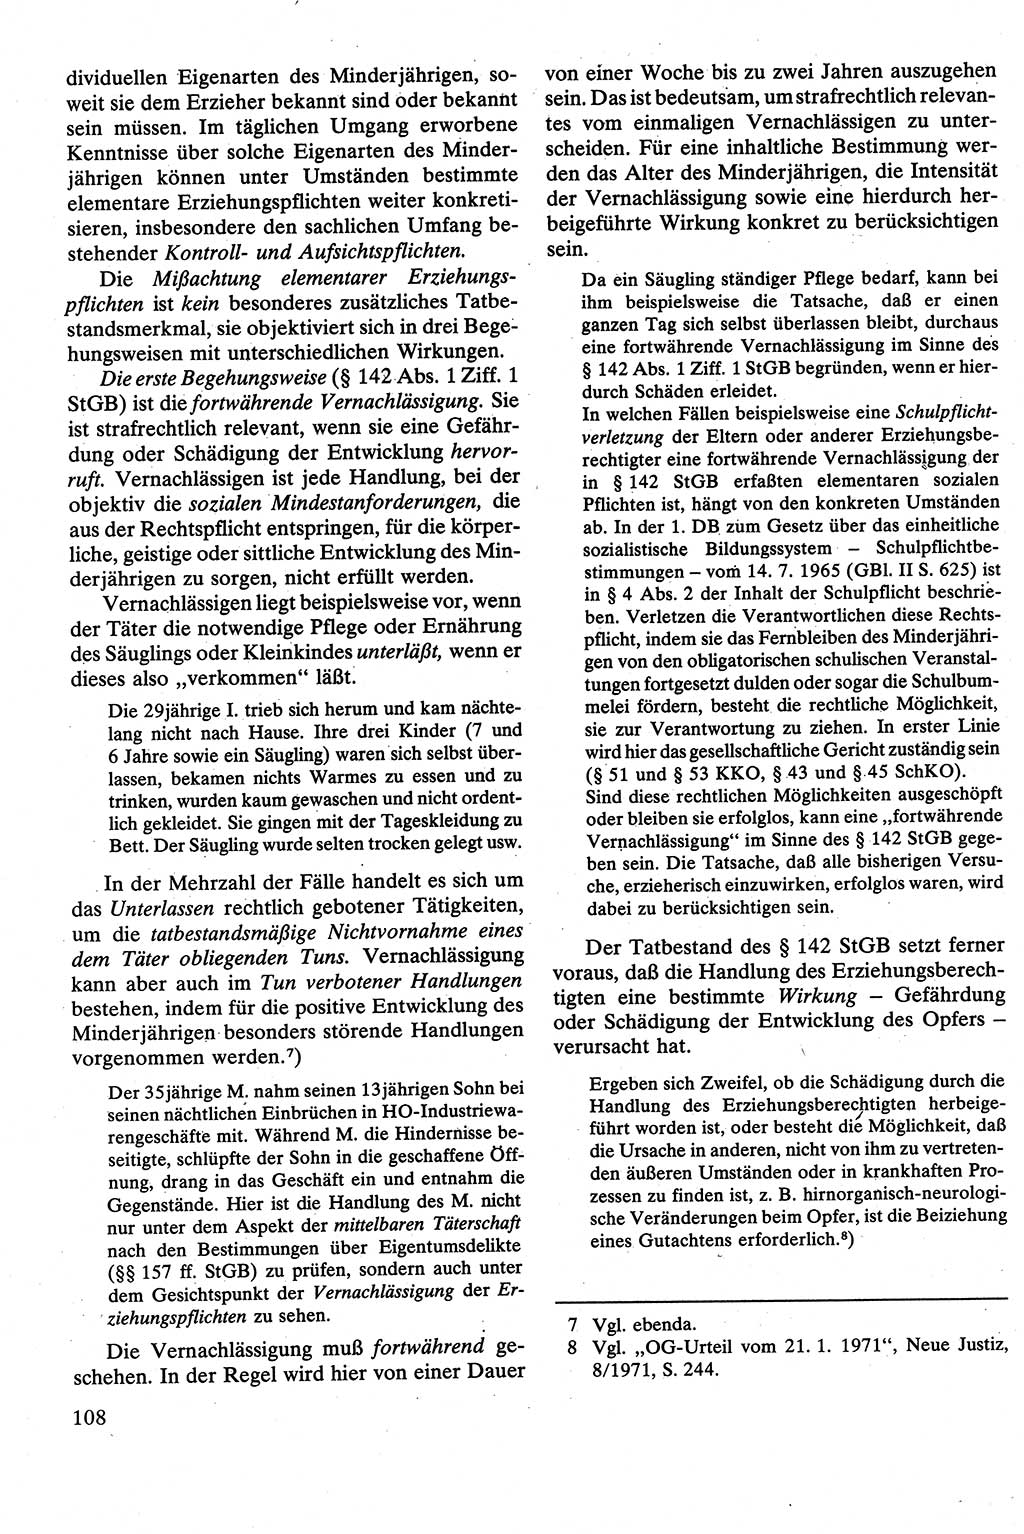 Strafrecht [Deutsche Demokratische Republik (DDR)], Besonderer Teil, Lehrbuch 1981, Seite 108 (Strafr. DDR BT Lb. 1981, S. 108)